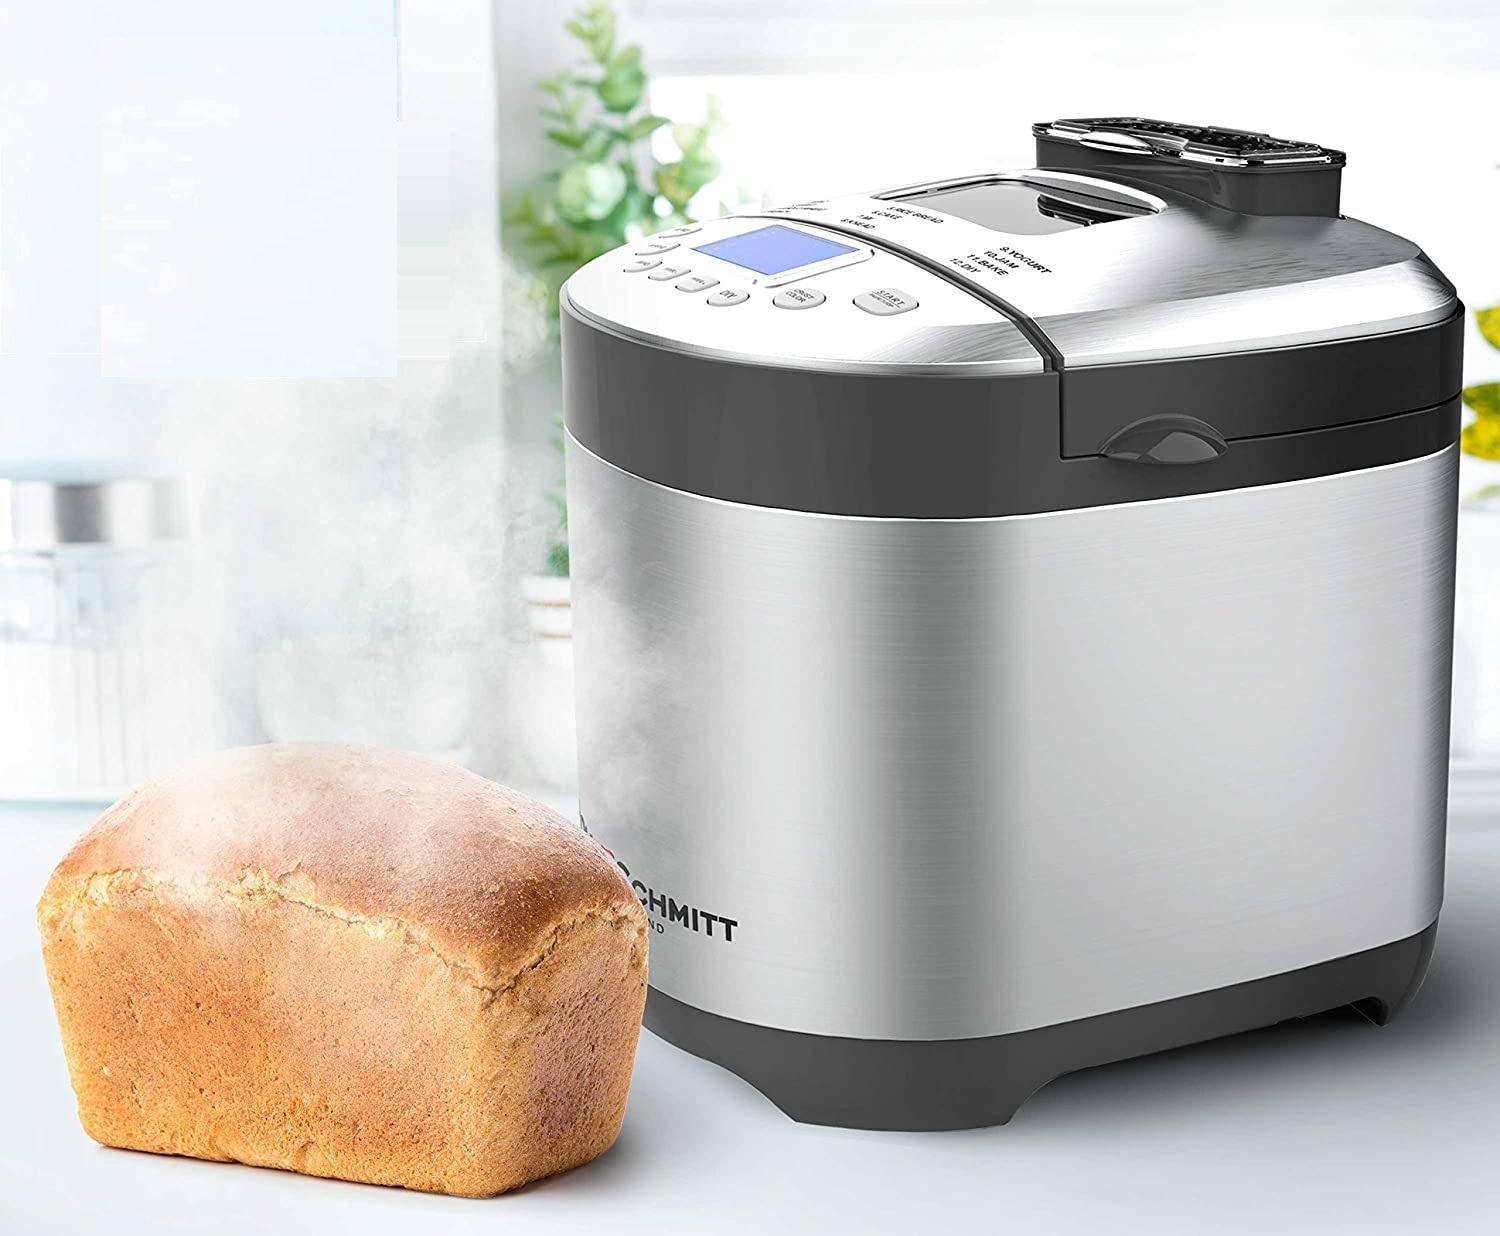 Pohl Schmitt Bread Maker Review